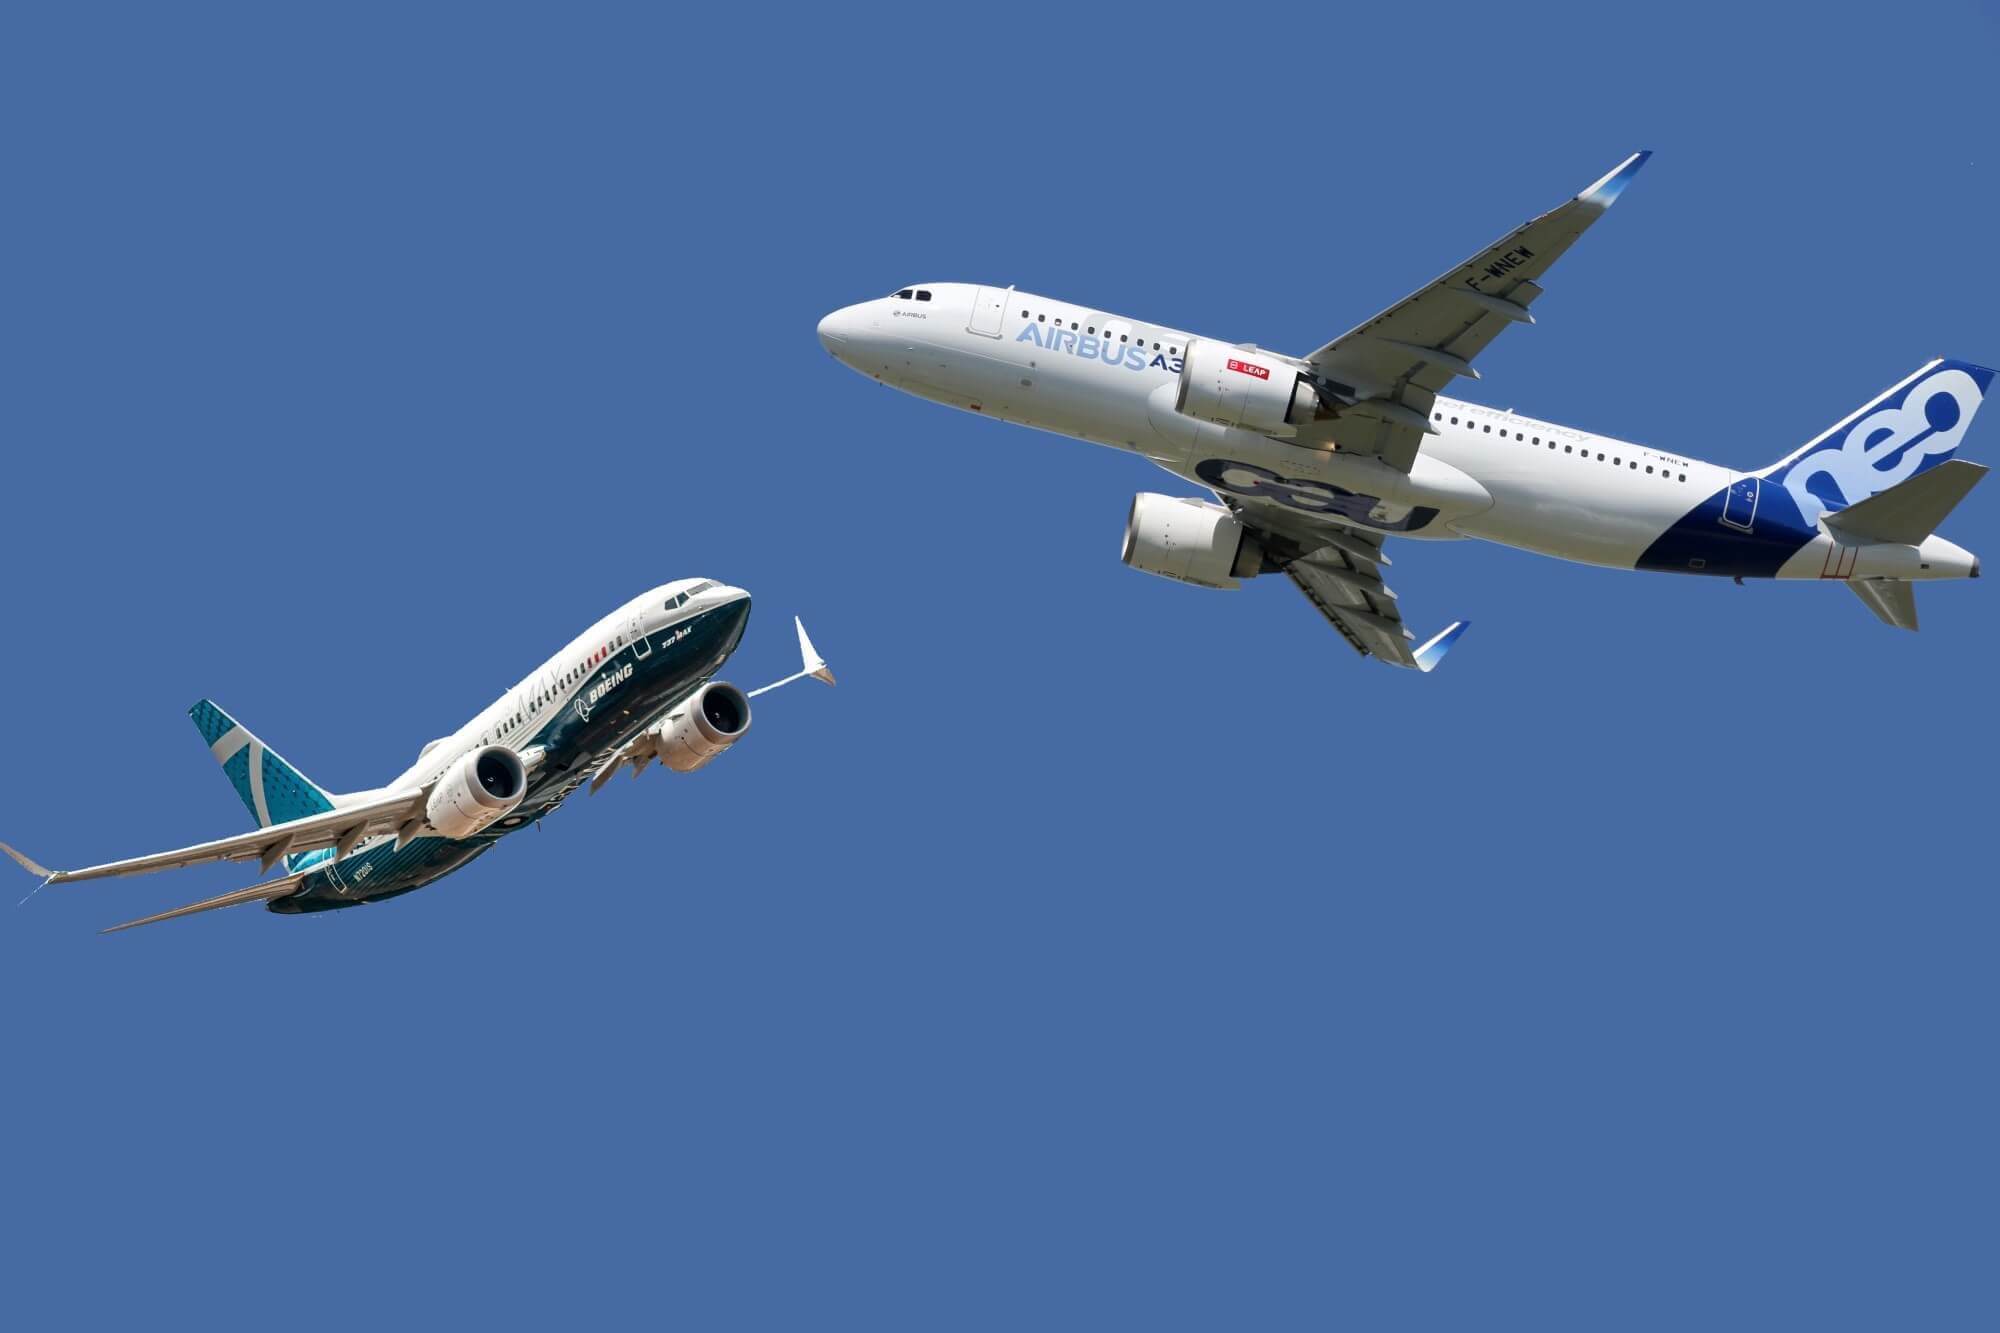 Airbus vs Boeing